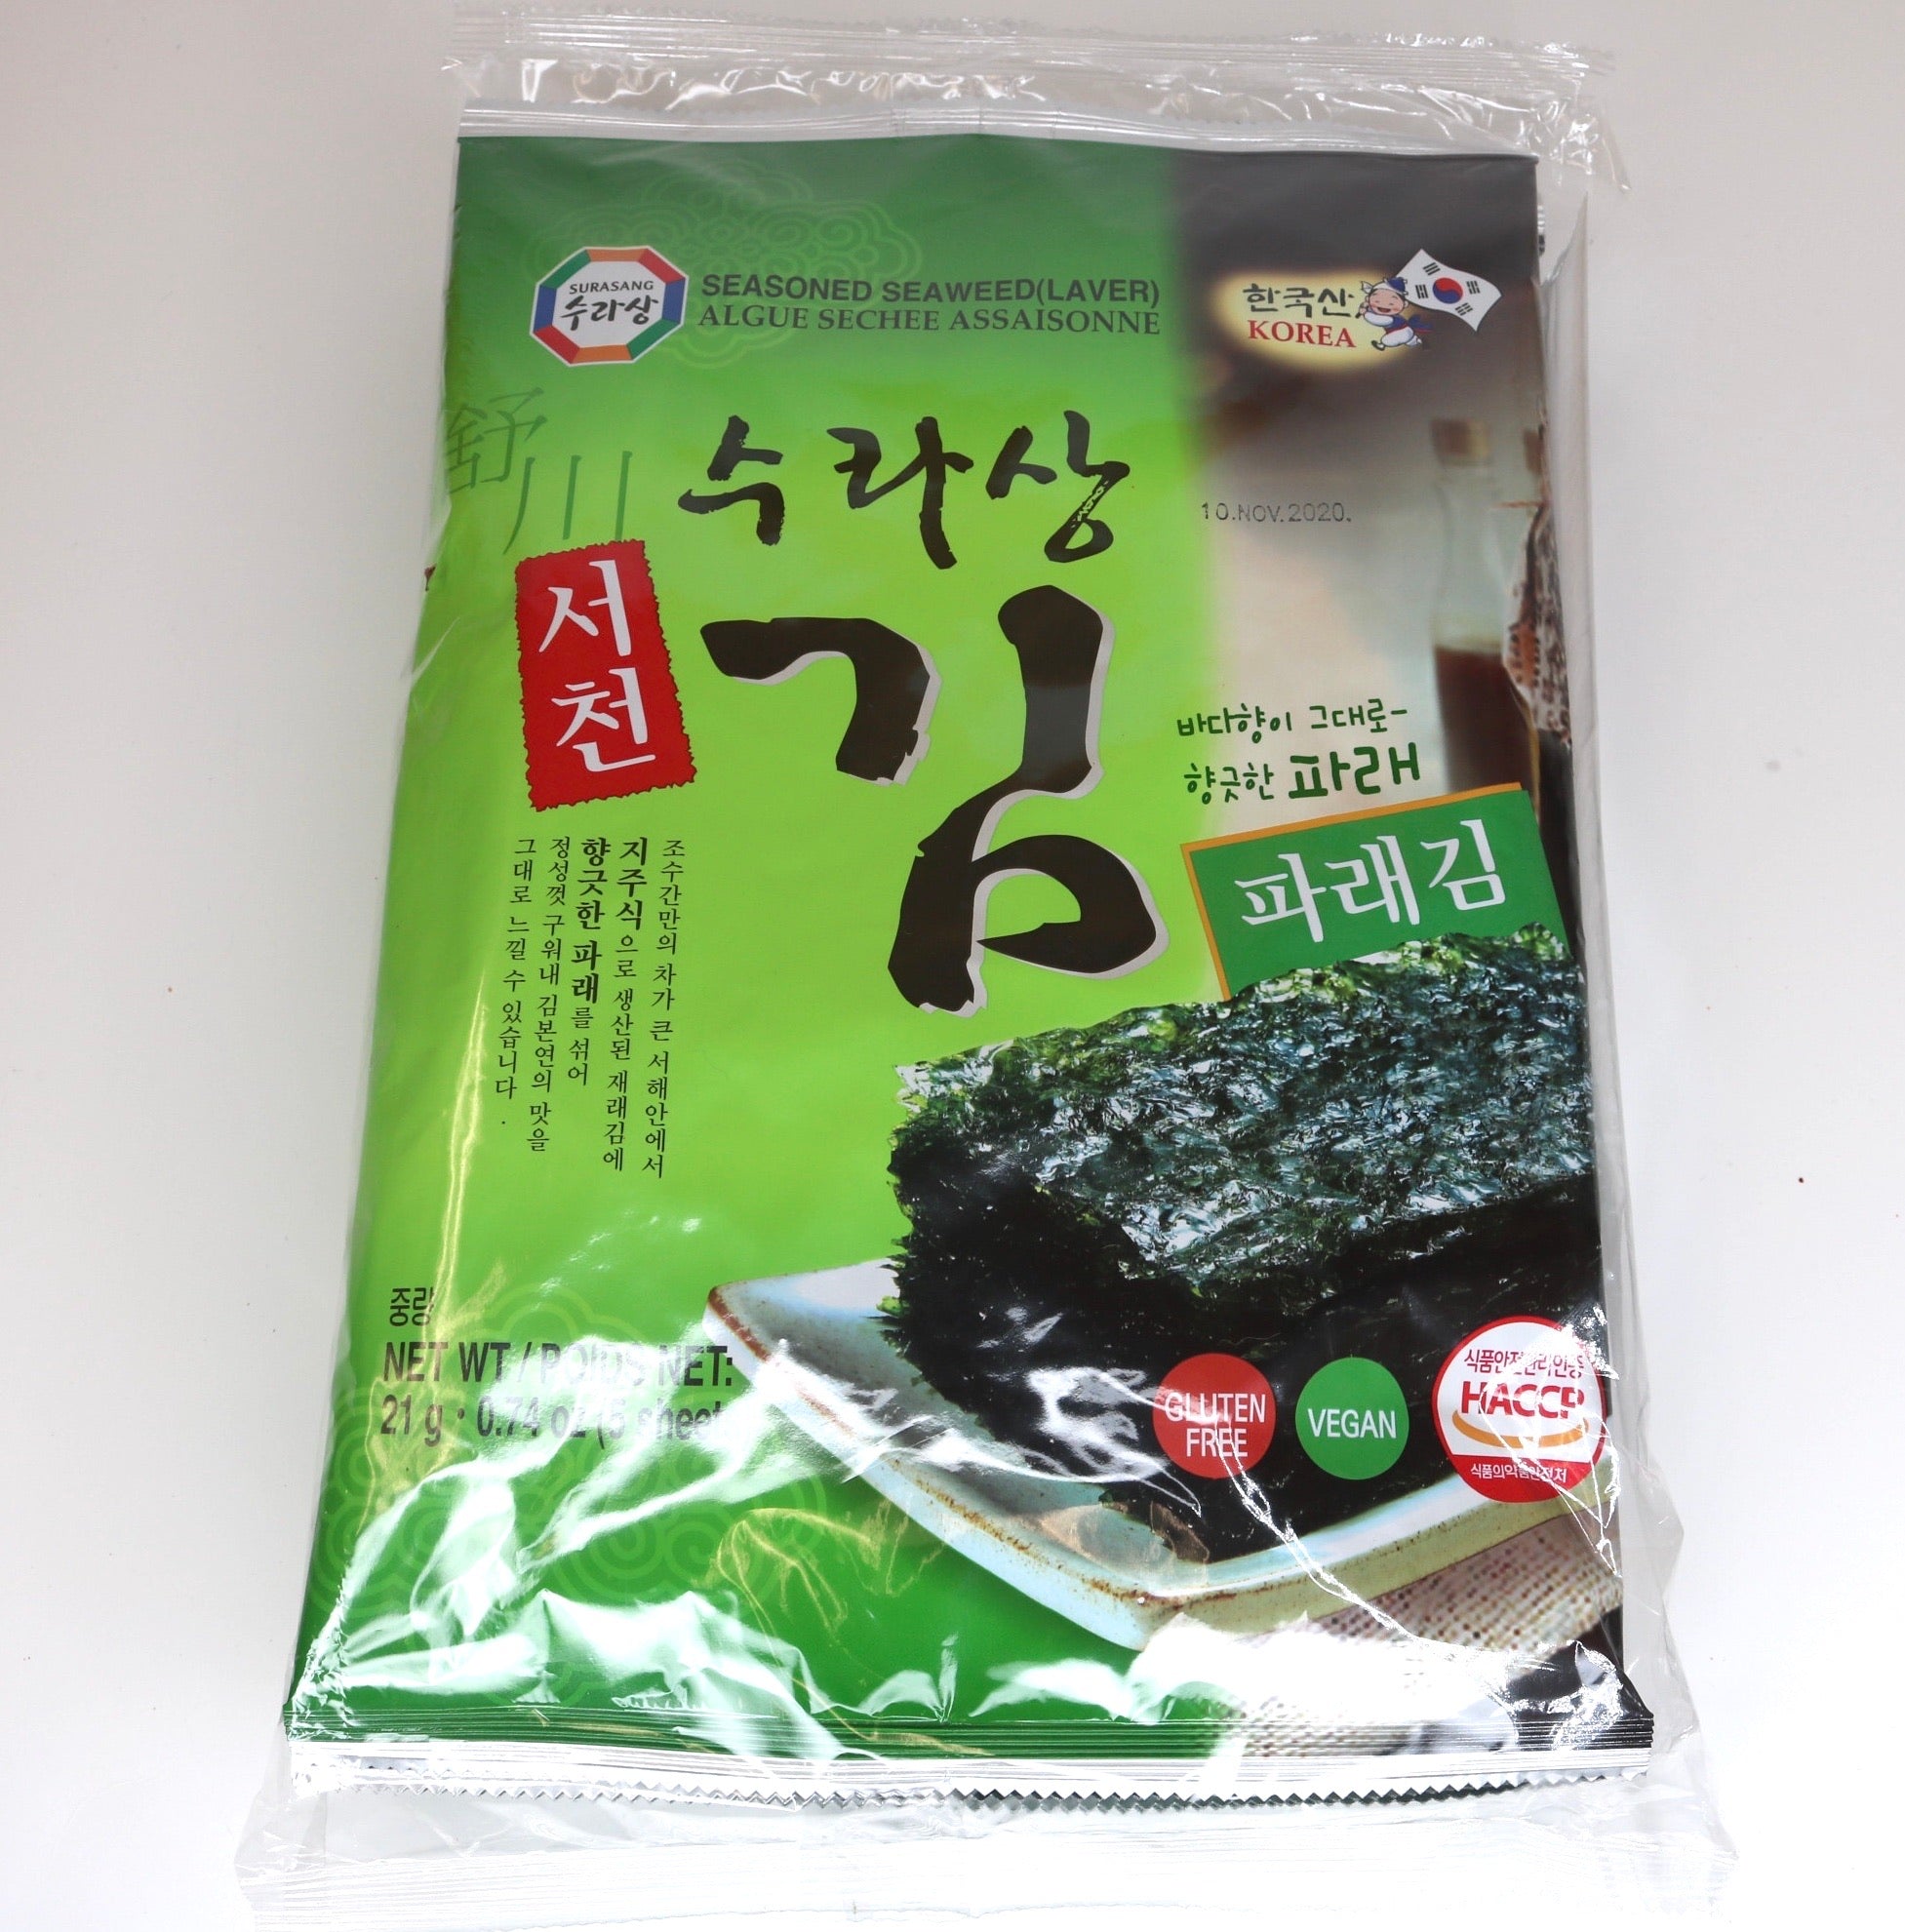 Surasang Seasoned Seaweed (Laver)(5 hojas por paquete x 4) - 21g/0.74oz x 4